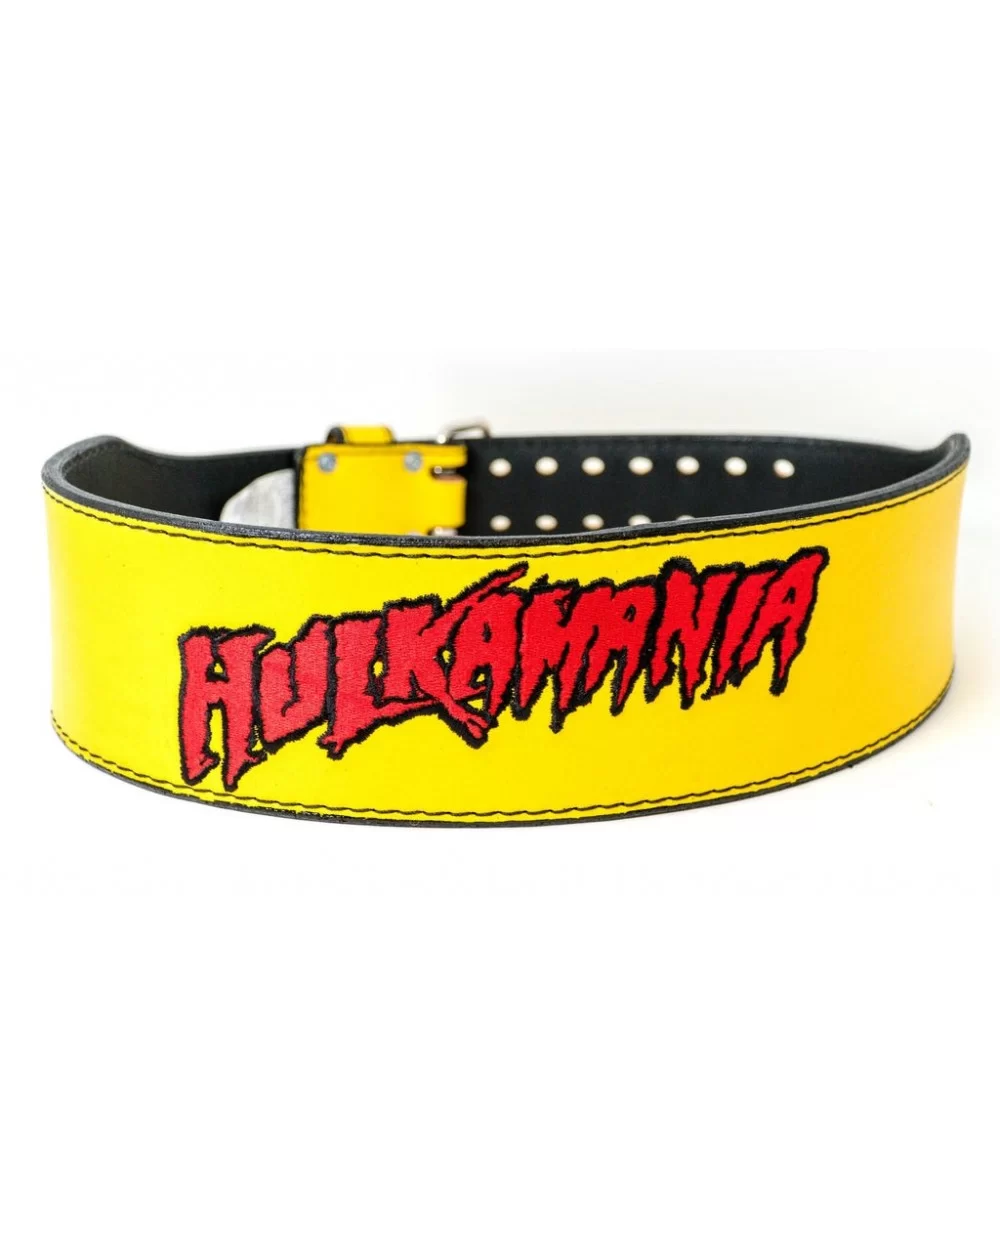 Hulkamania Weight Belt $68.40 Belts